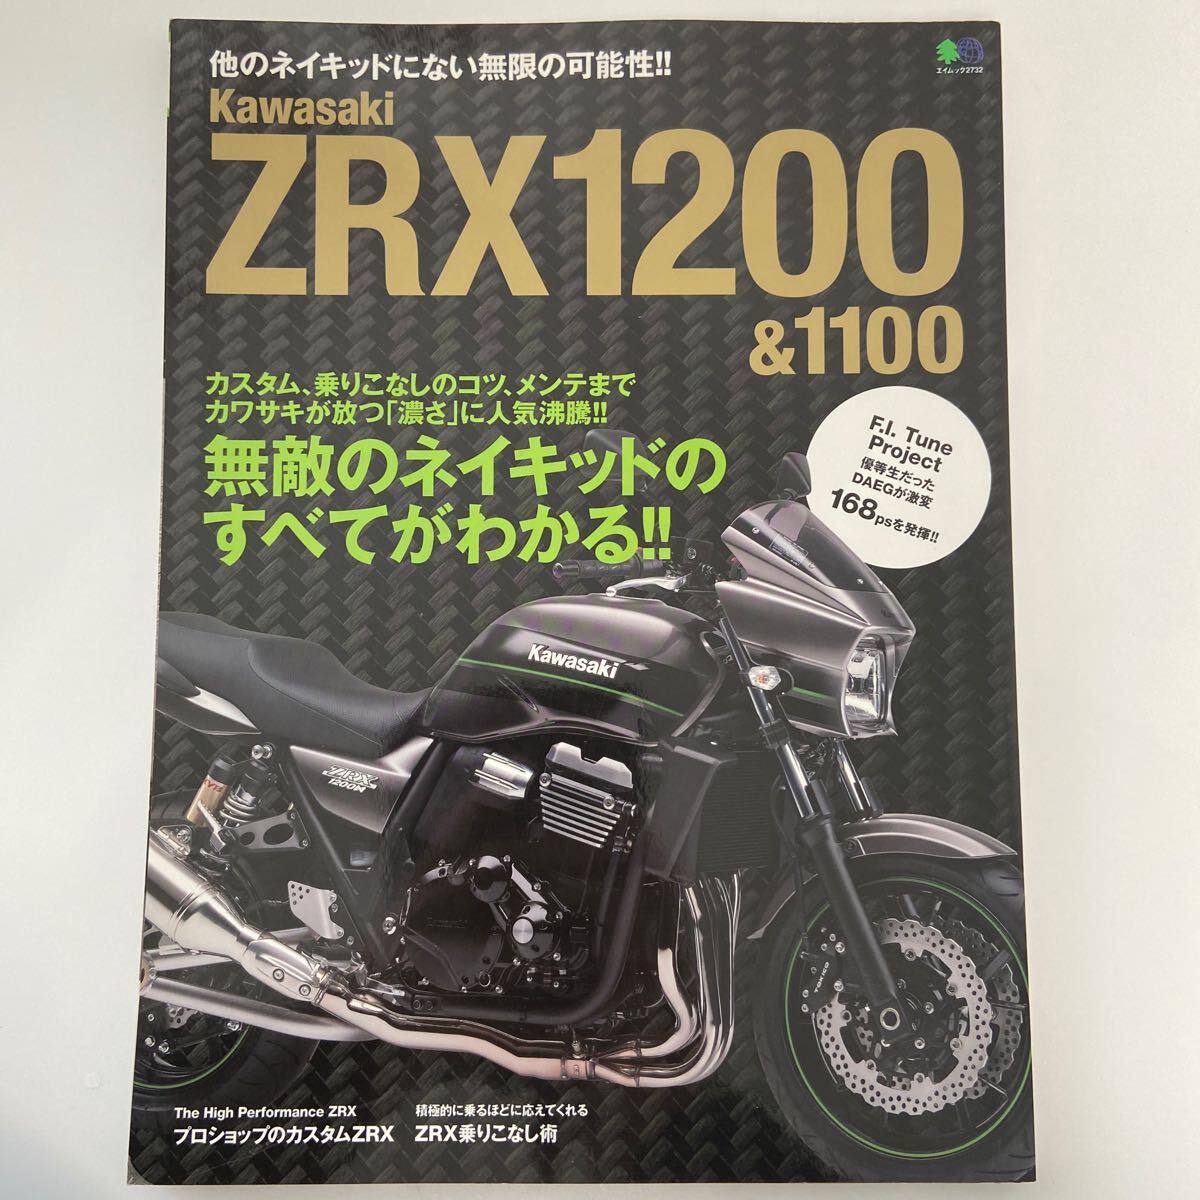 創刊号 Kawasaki ZRX1200 1100 カワサキ ネイキッドのすべてがわかる カスタム メンテナンス バイク 本 DAEG